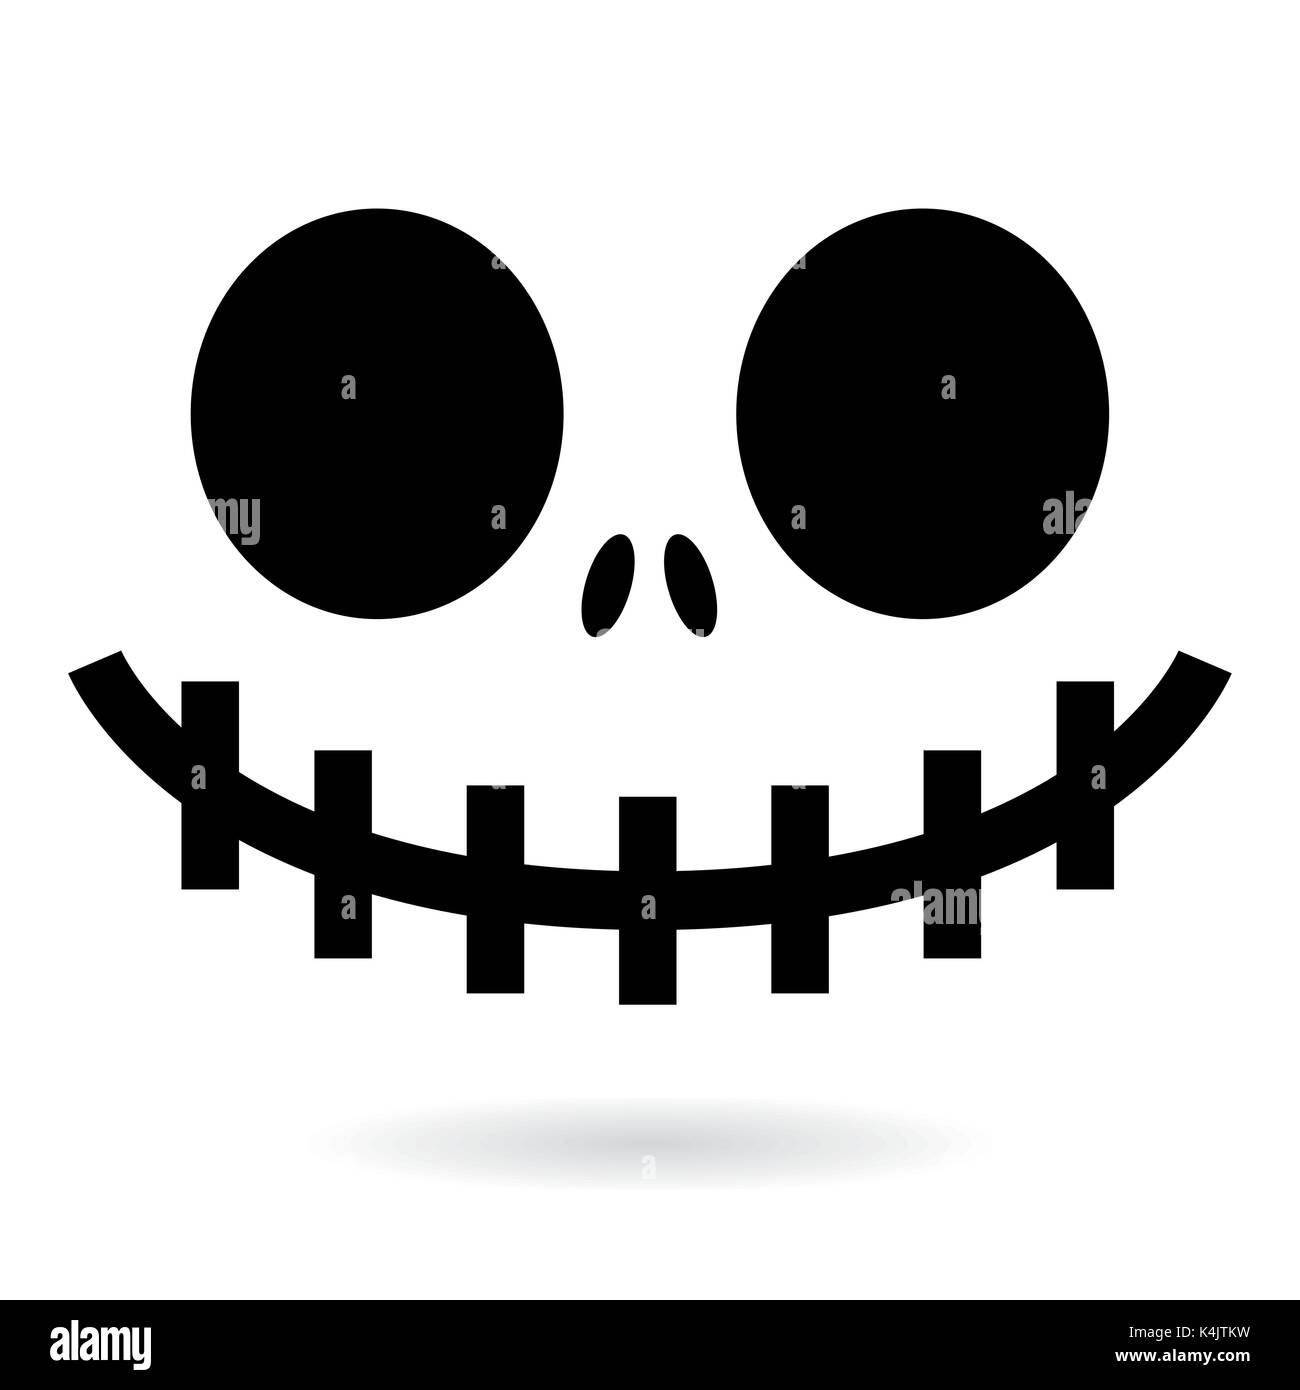 Scary Halloween Ghost oder Kürbis Gesicht vektor design, monster Mund Symbol mit gruseligen Augen, Nase und grossen Zähnen bösen Charakter für Halloween feiern. Stock Vektor